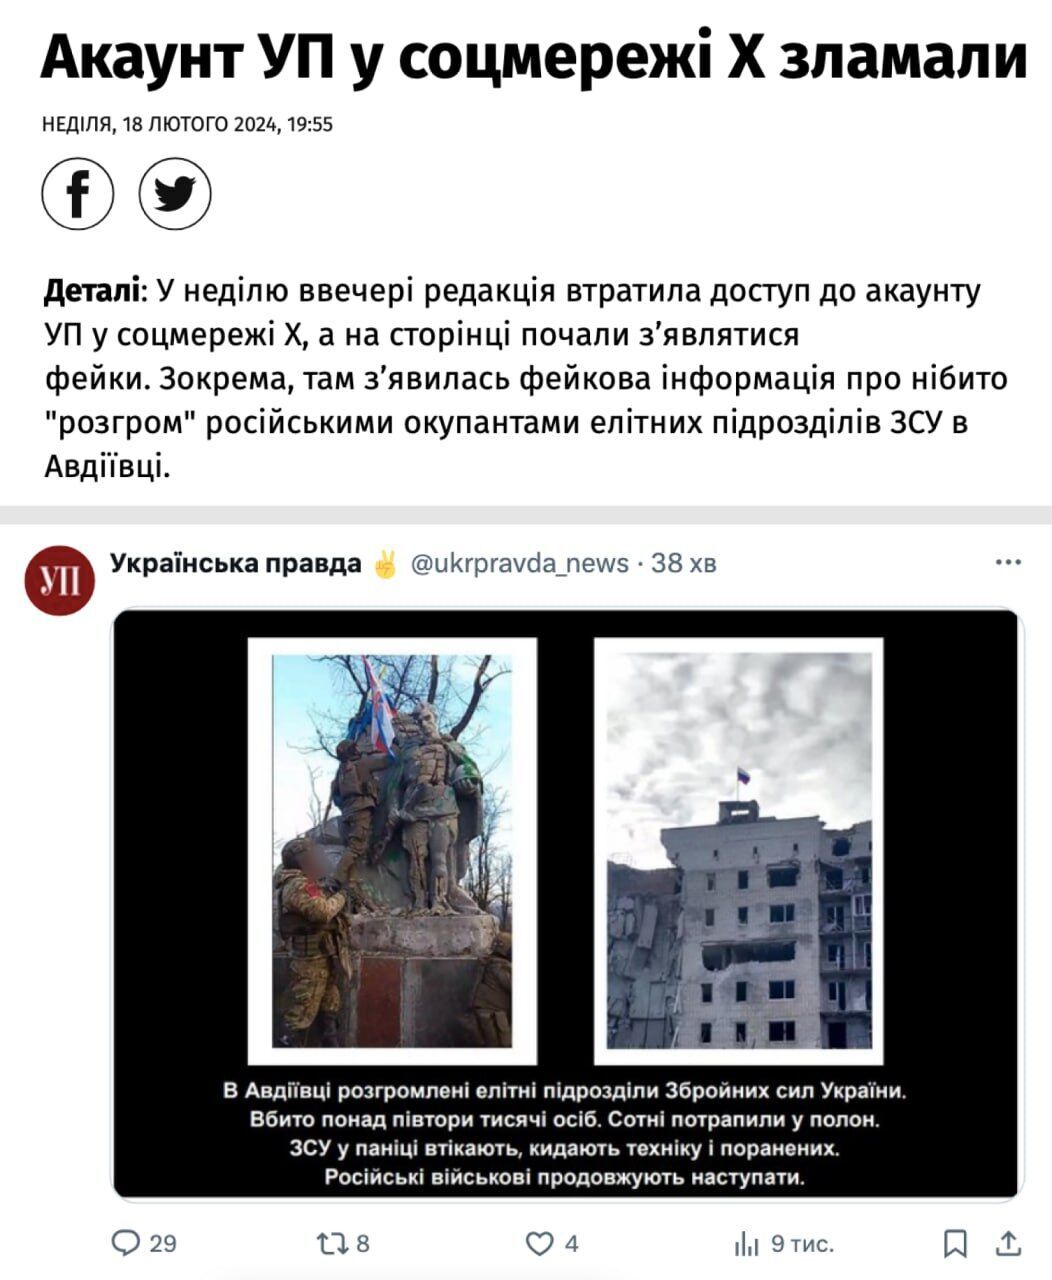 Акаунт ''Української правді'' у соцмережі Х (Twitter) було зламано: деталі